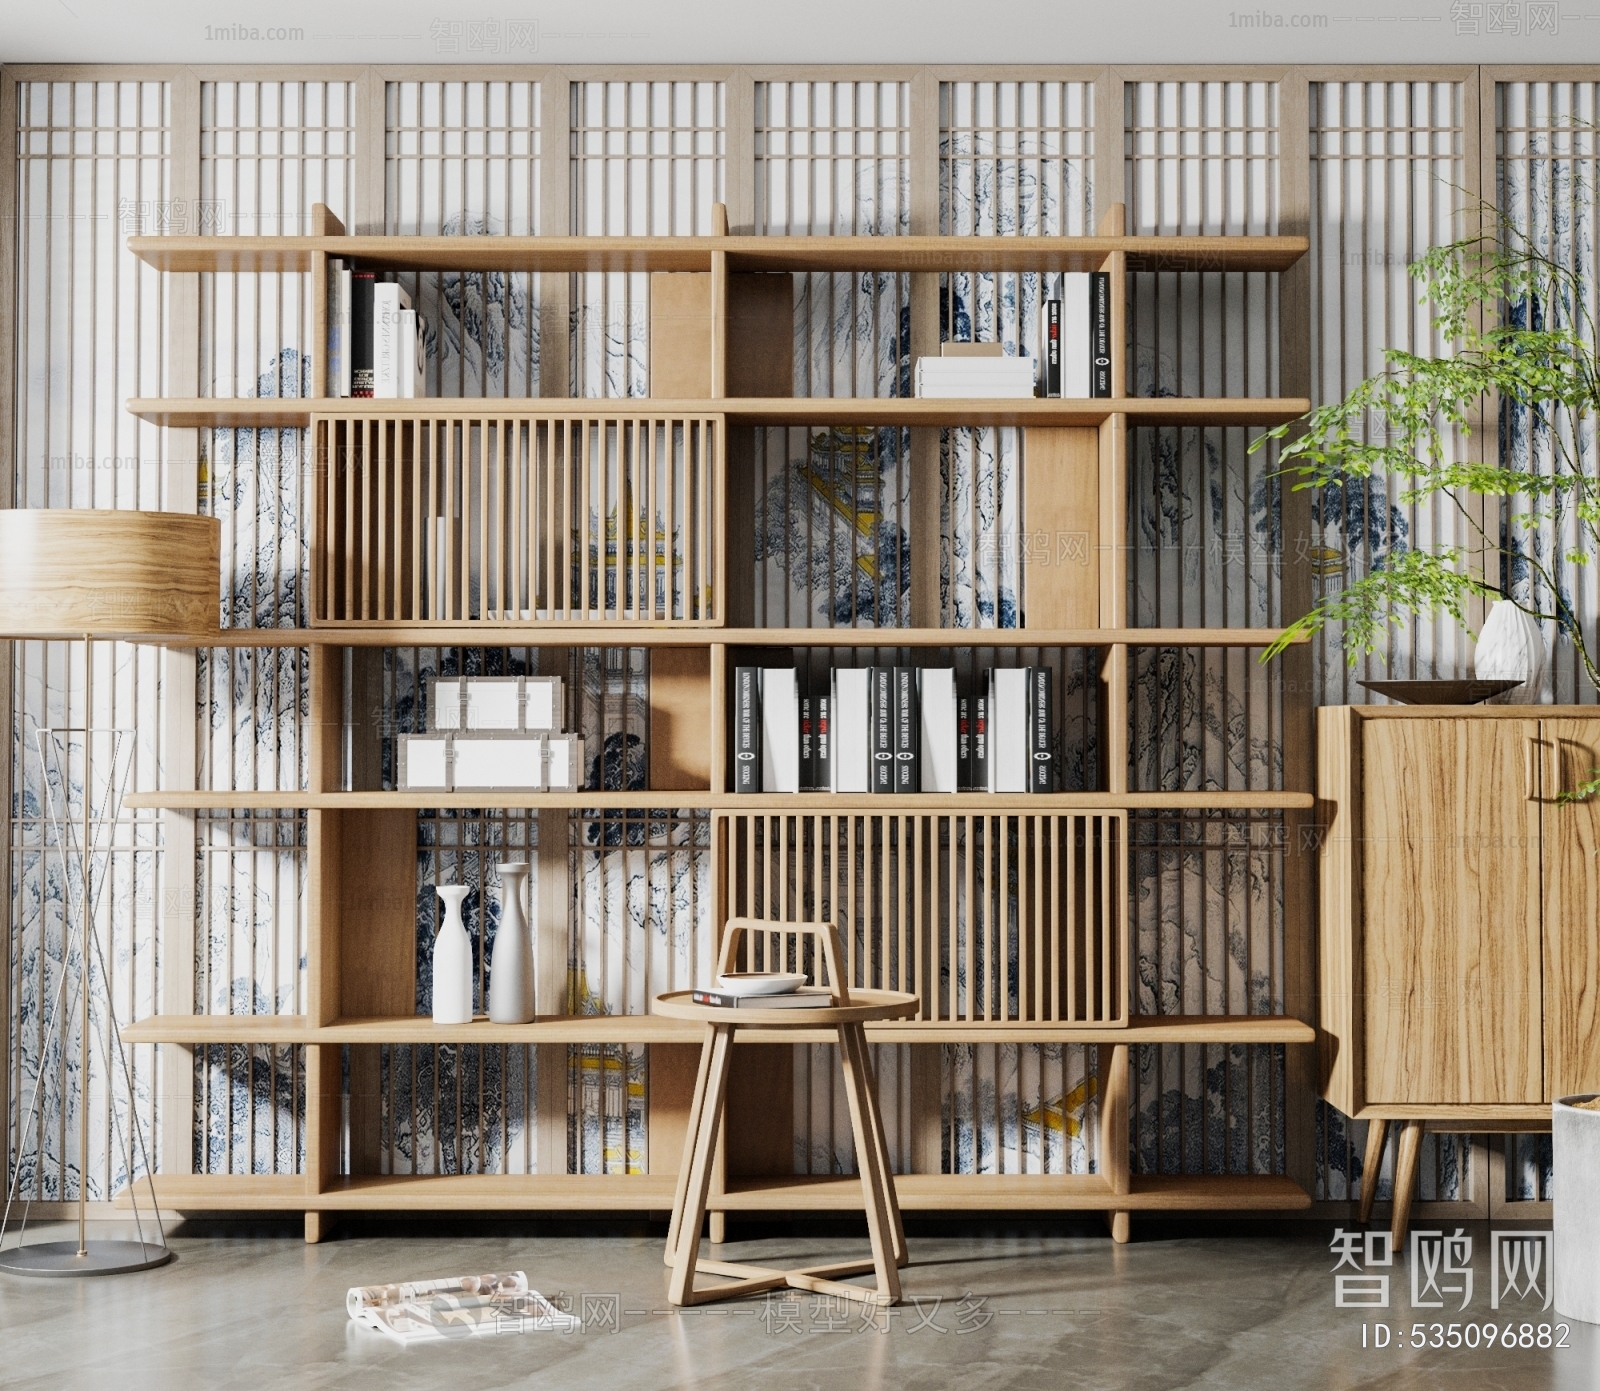 New Chinese Style Bookshelf